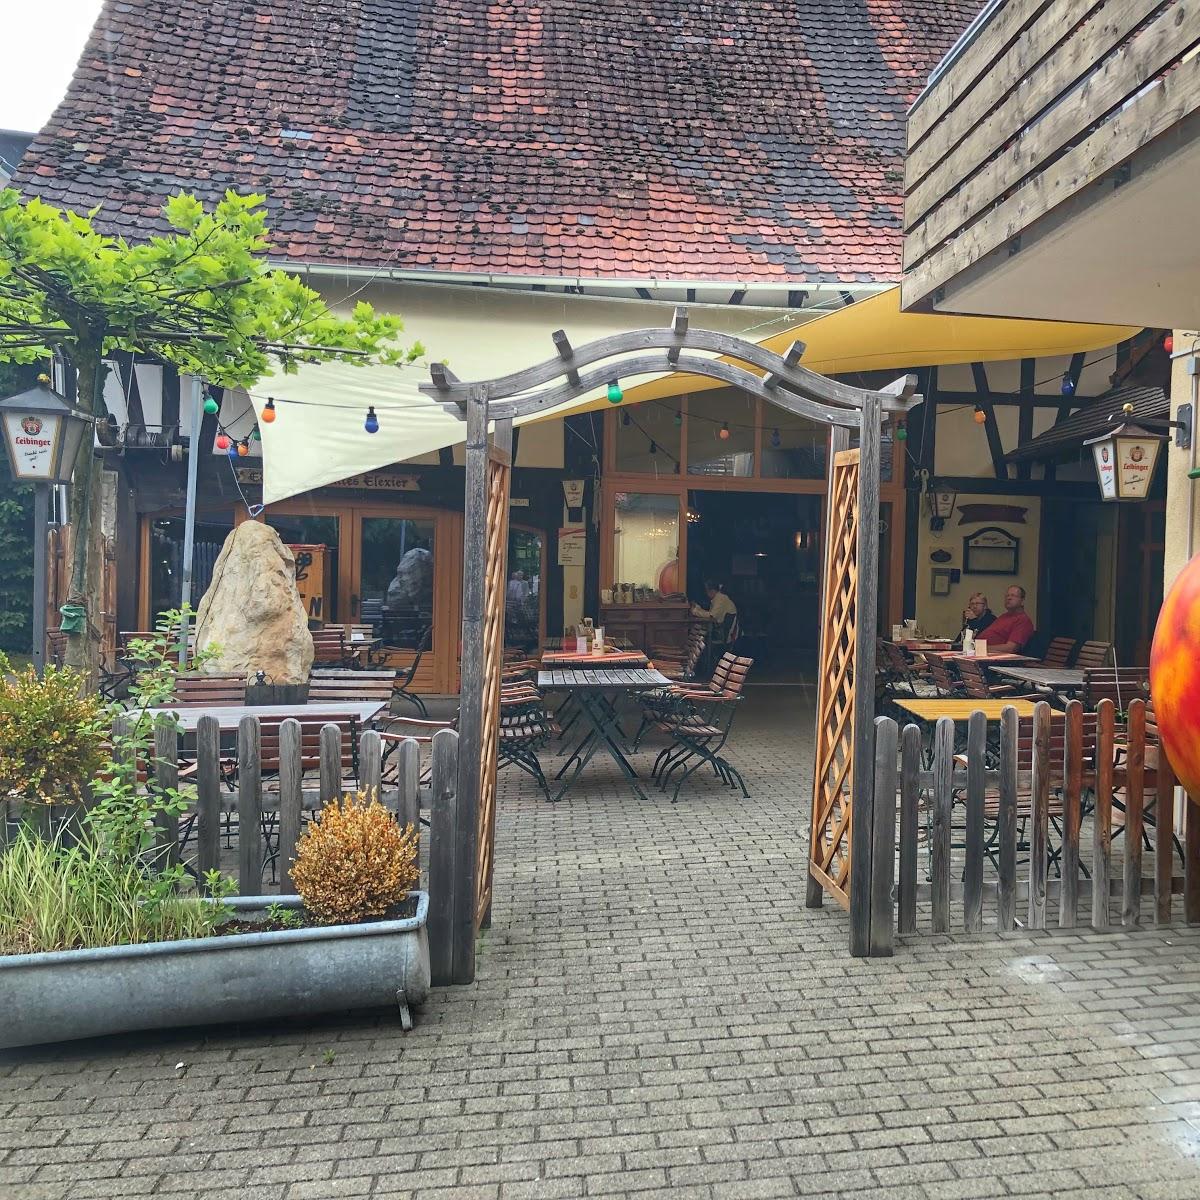 Restaurant "Wirtshaus Alte Brennerei" in  Stetten